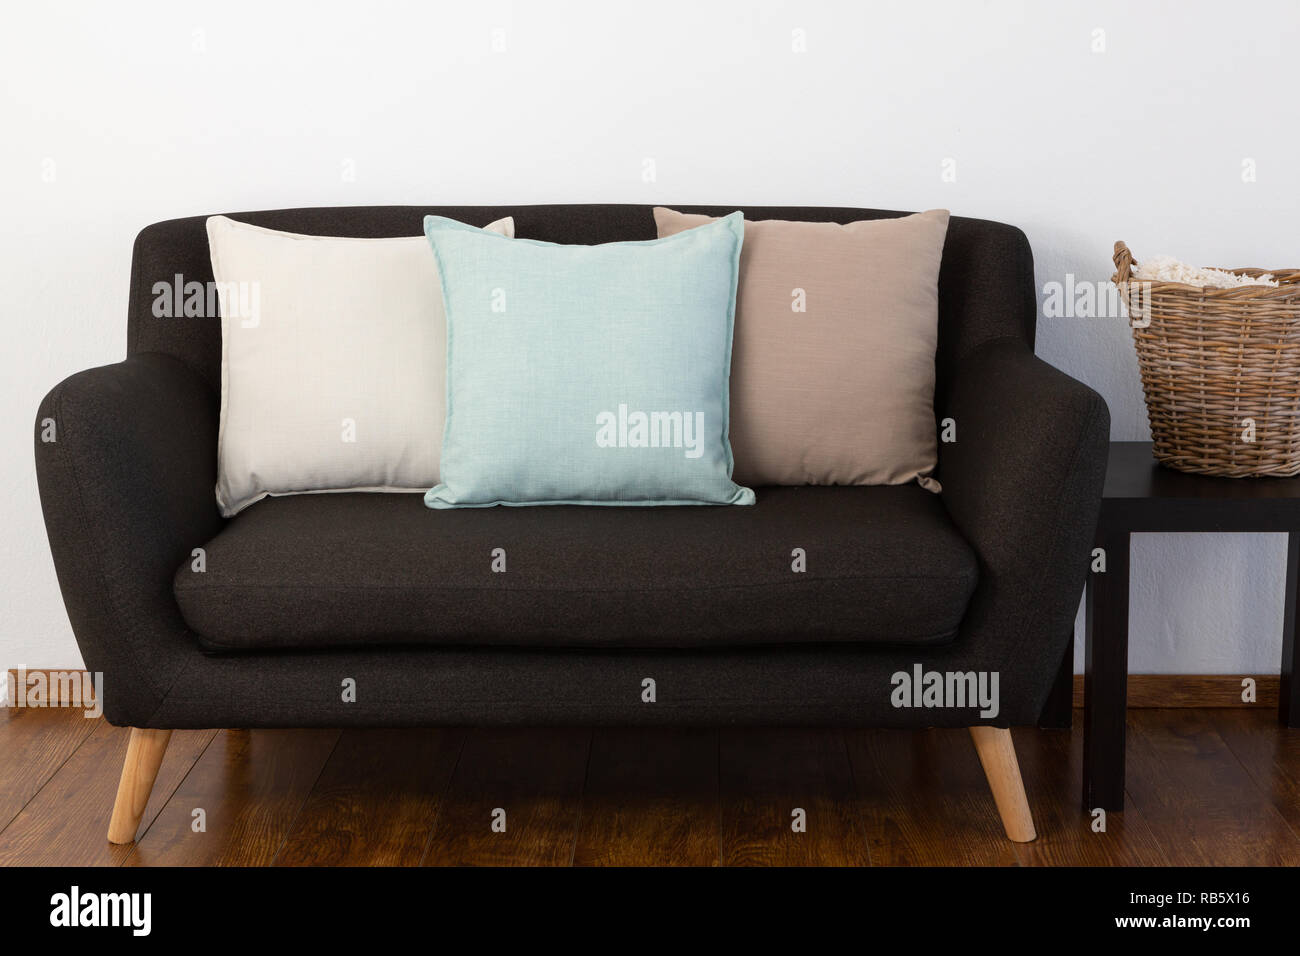 Cuscini disposti sul divano Foto Stock